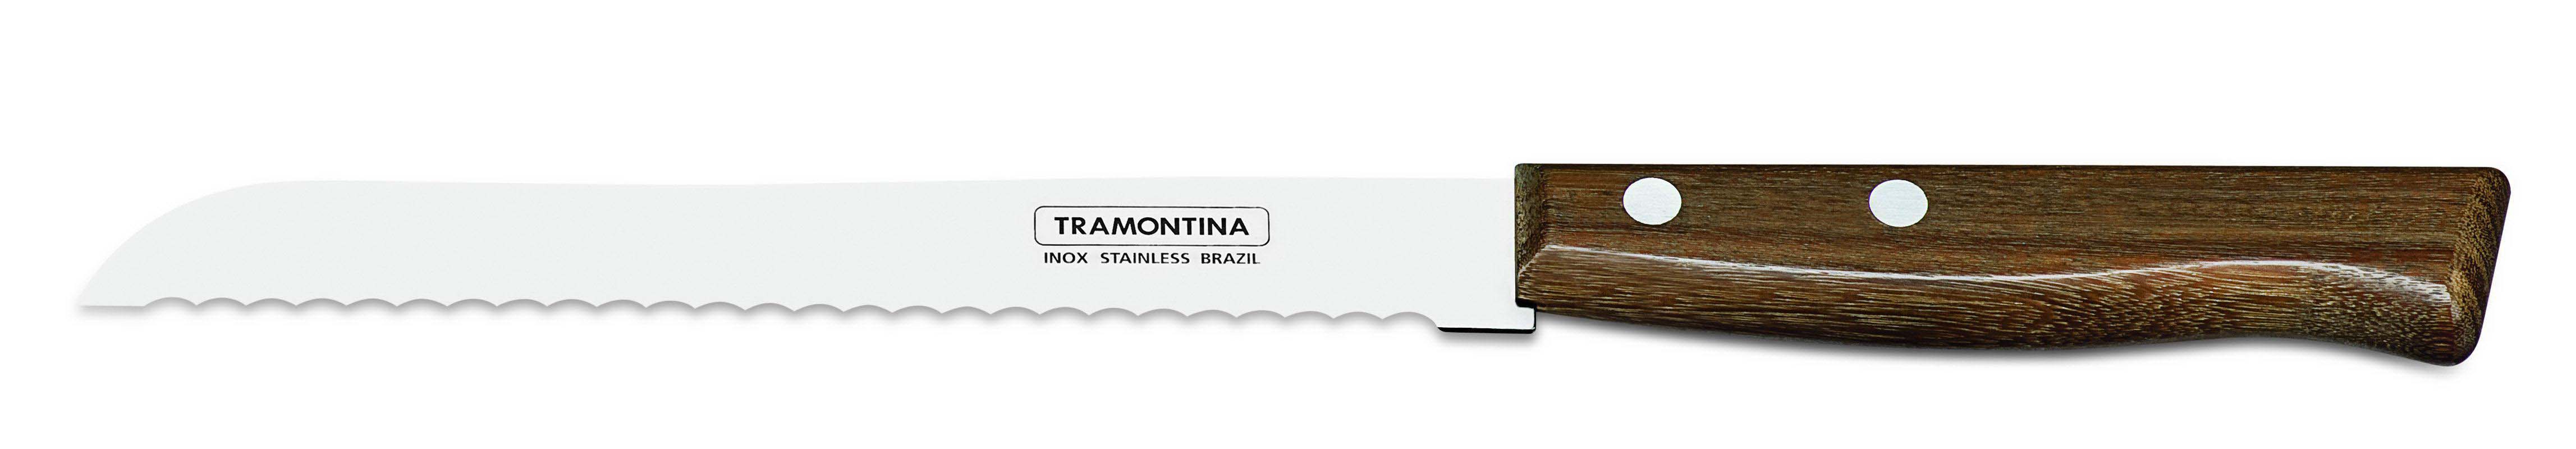 Μαχαίρι Ψωμιού Ανοξείδωτο Tradicional Tramontina 18εκ. TR22215007 (Υλικό: Ανοξείδωτο) – Tramontina – TR22215007